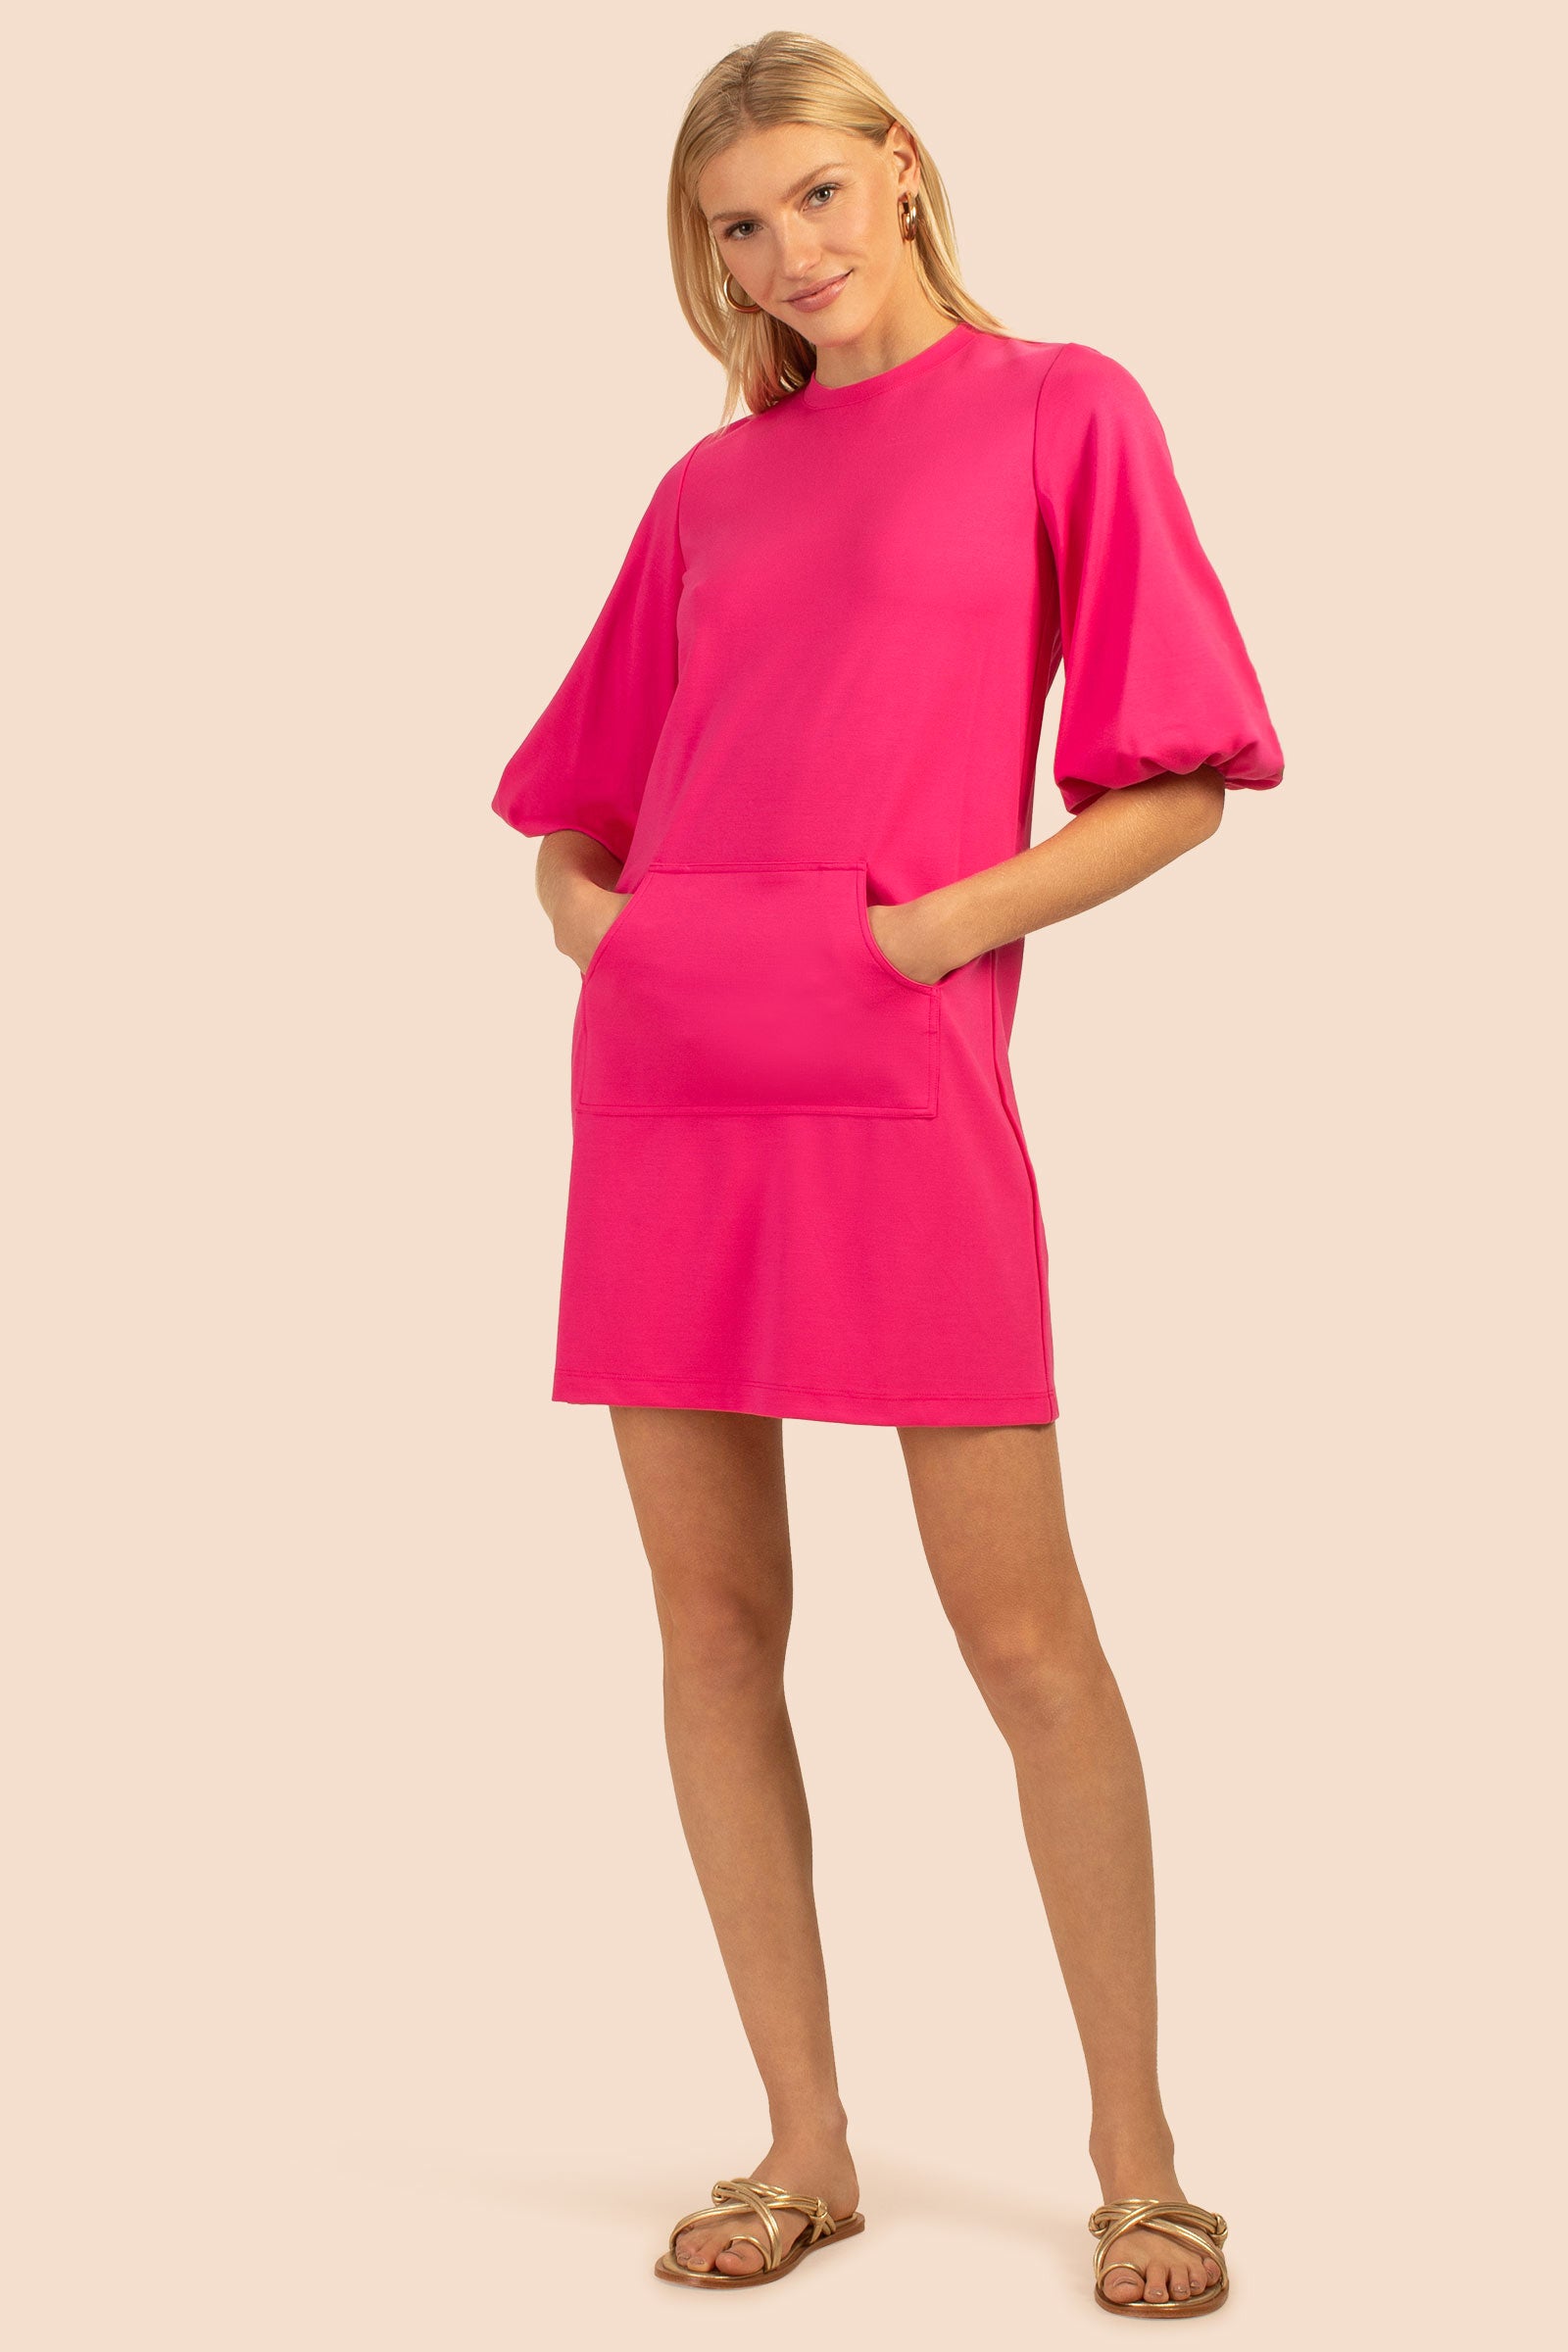 Trina Turk Neutra Shift Dress - Pink - XSmall